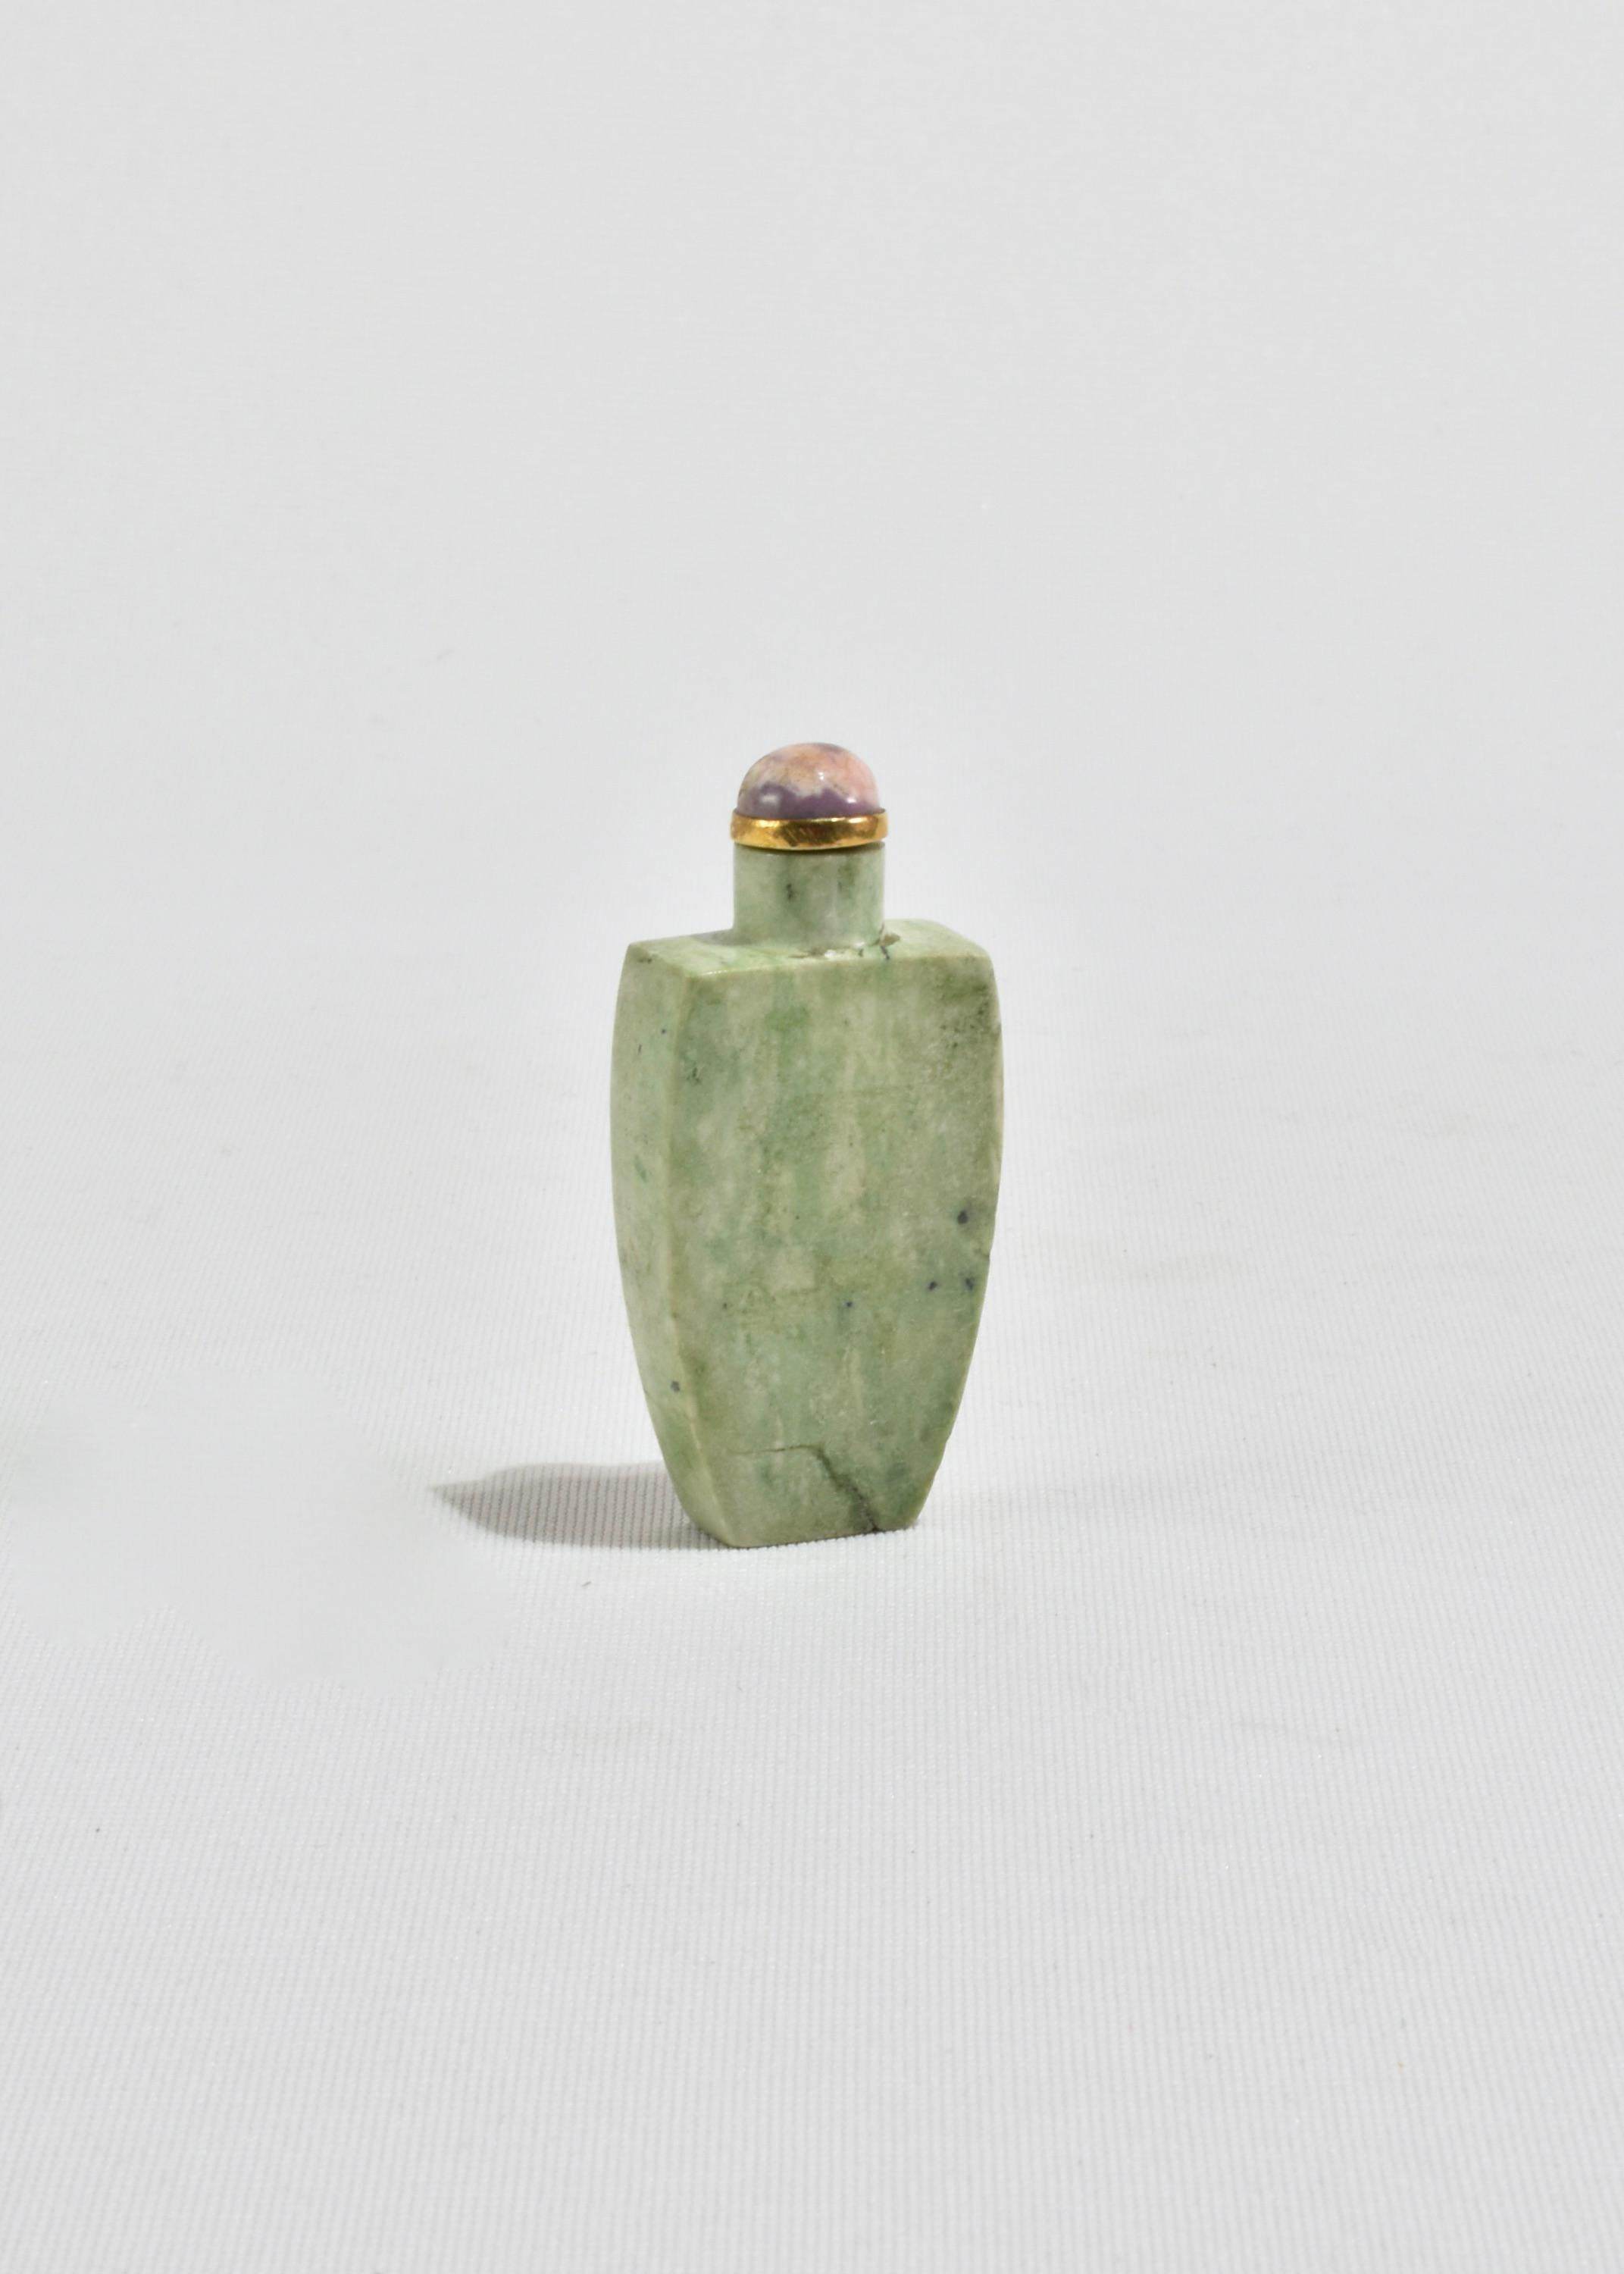 Atemberaubende, Vintage handgeschnitzten chinesischen Schnupftabak Flasche in einem schönen grünen Stein mit Messing-Detail und lila oben. Sie können die Dose als dekoratives Element aufstellen oder mit Ihrem Lieblingsduft füllen.